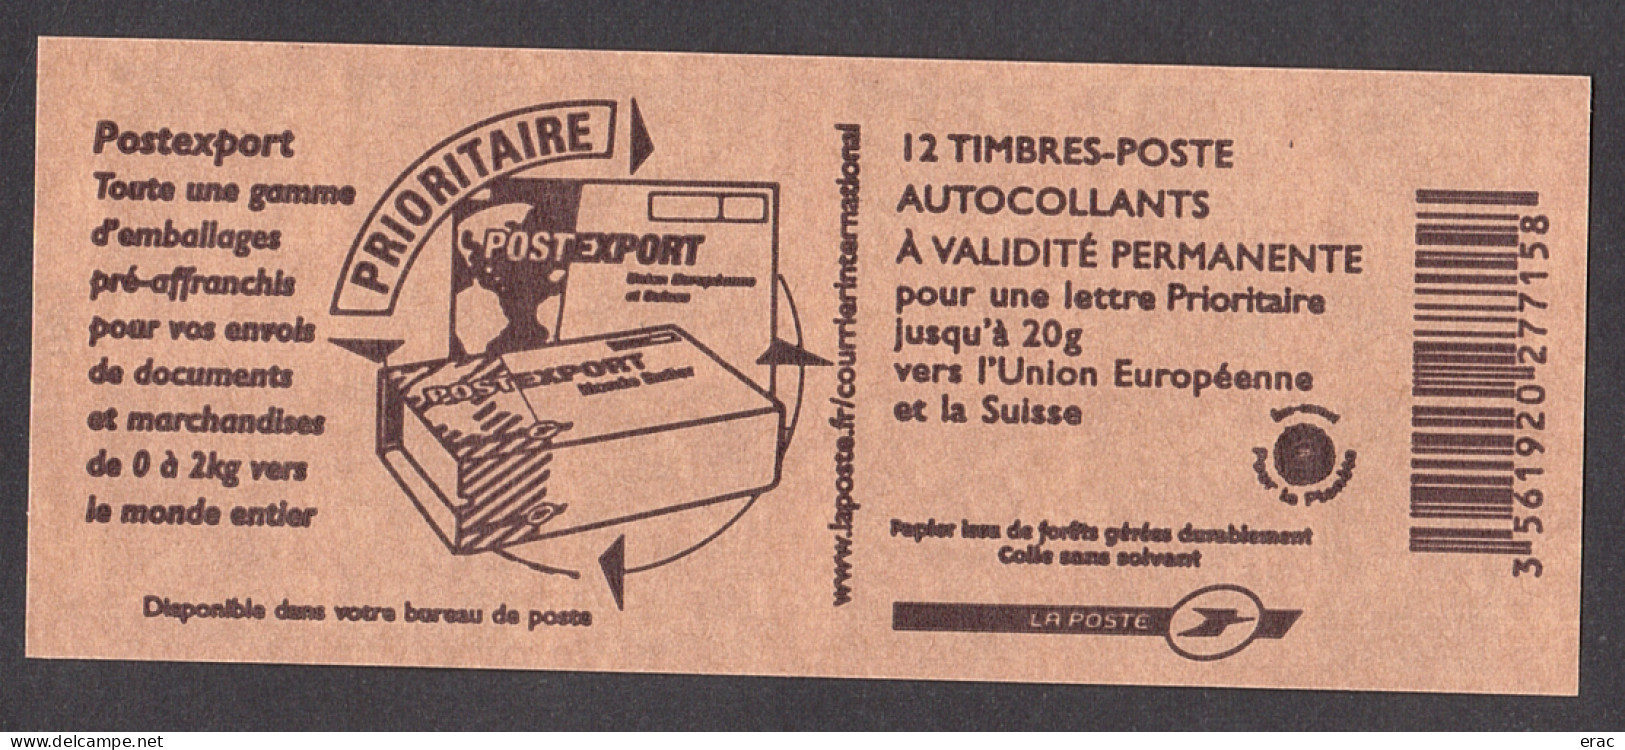 France - Carnet 4127-C1 - Neuf ** - N° De Liasse - Marianne De Lamouche - Postexport - Carnets